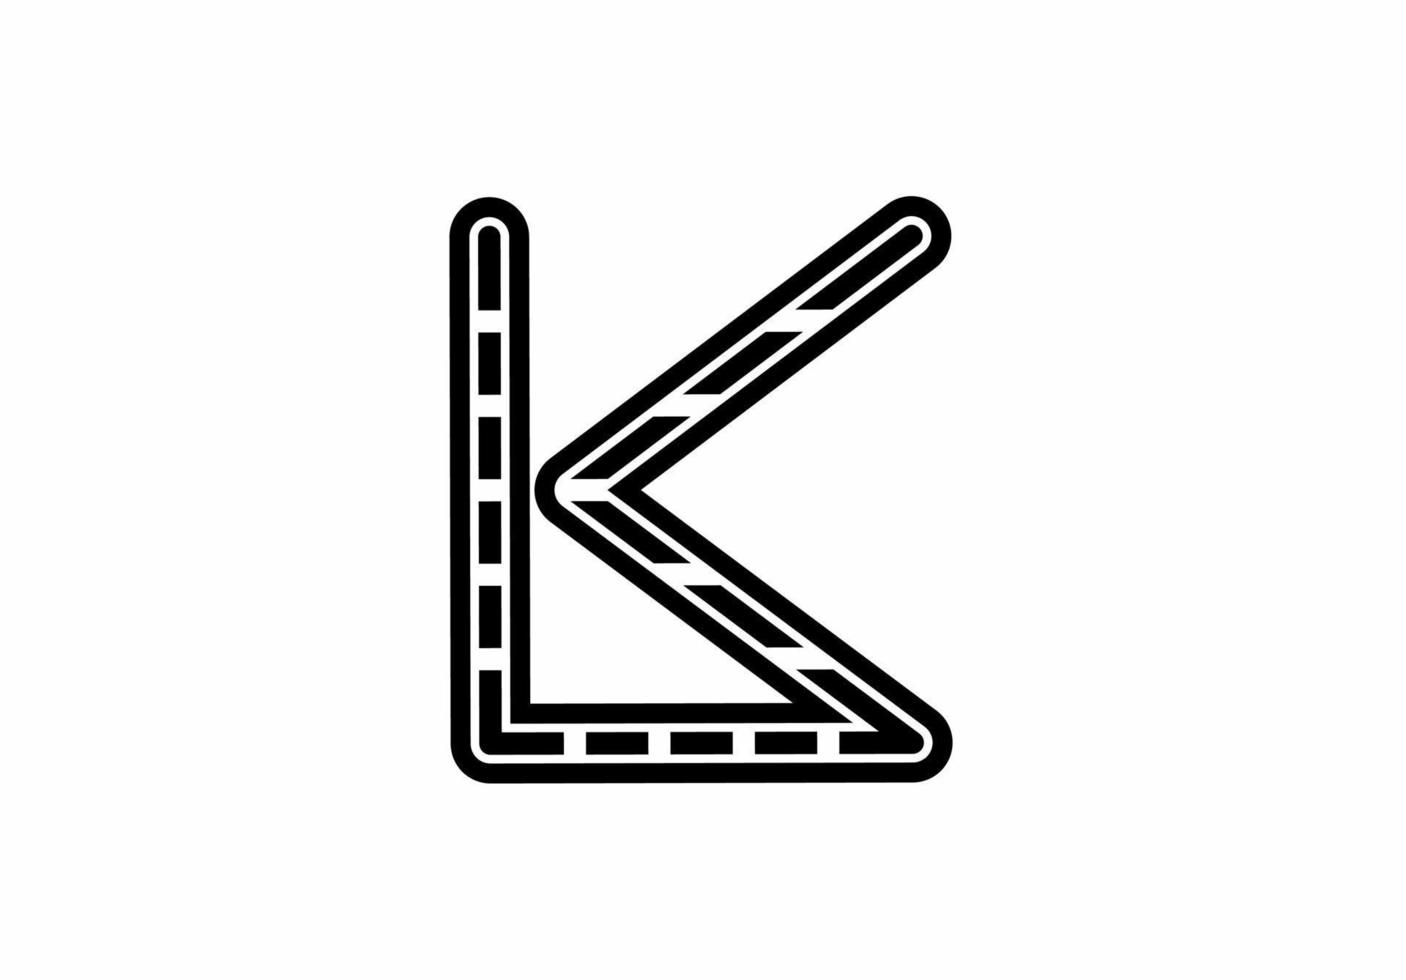 Lk kl l k initial letter logo vector